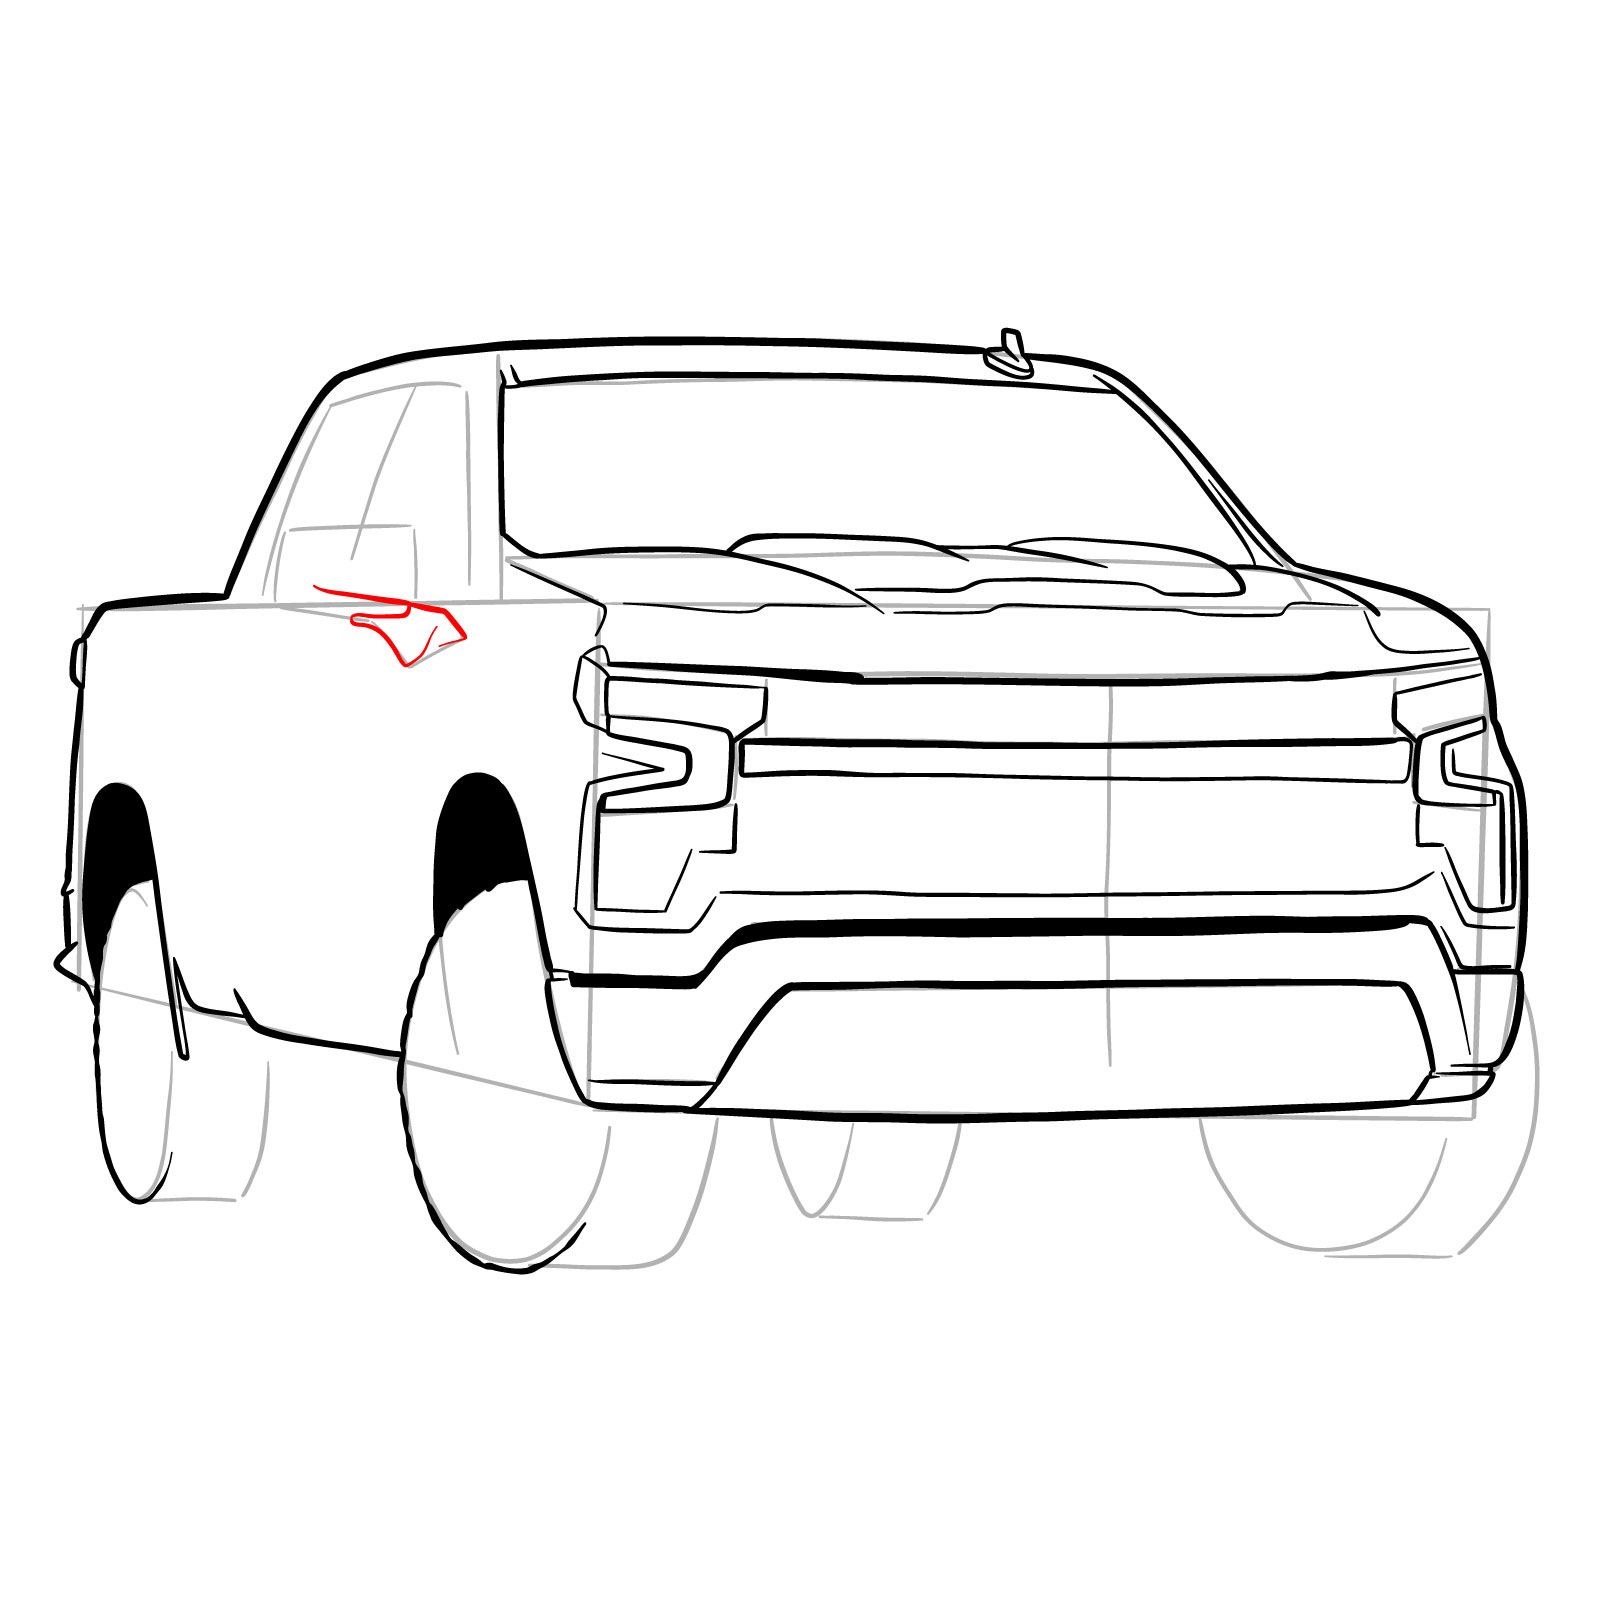 How to draw a 2022 Chevy Silverado - step 22